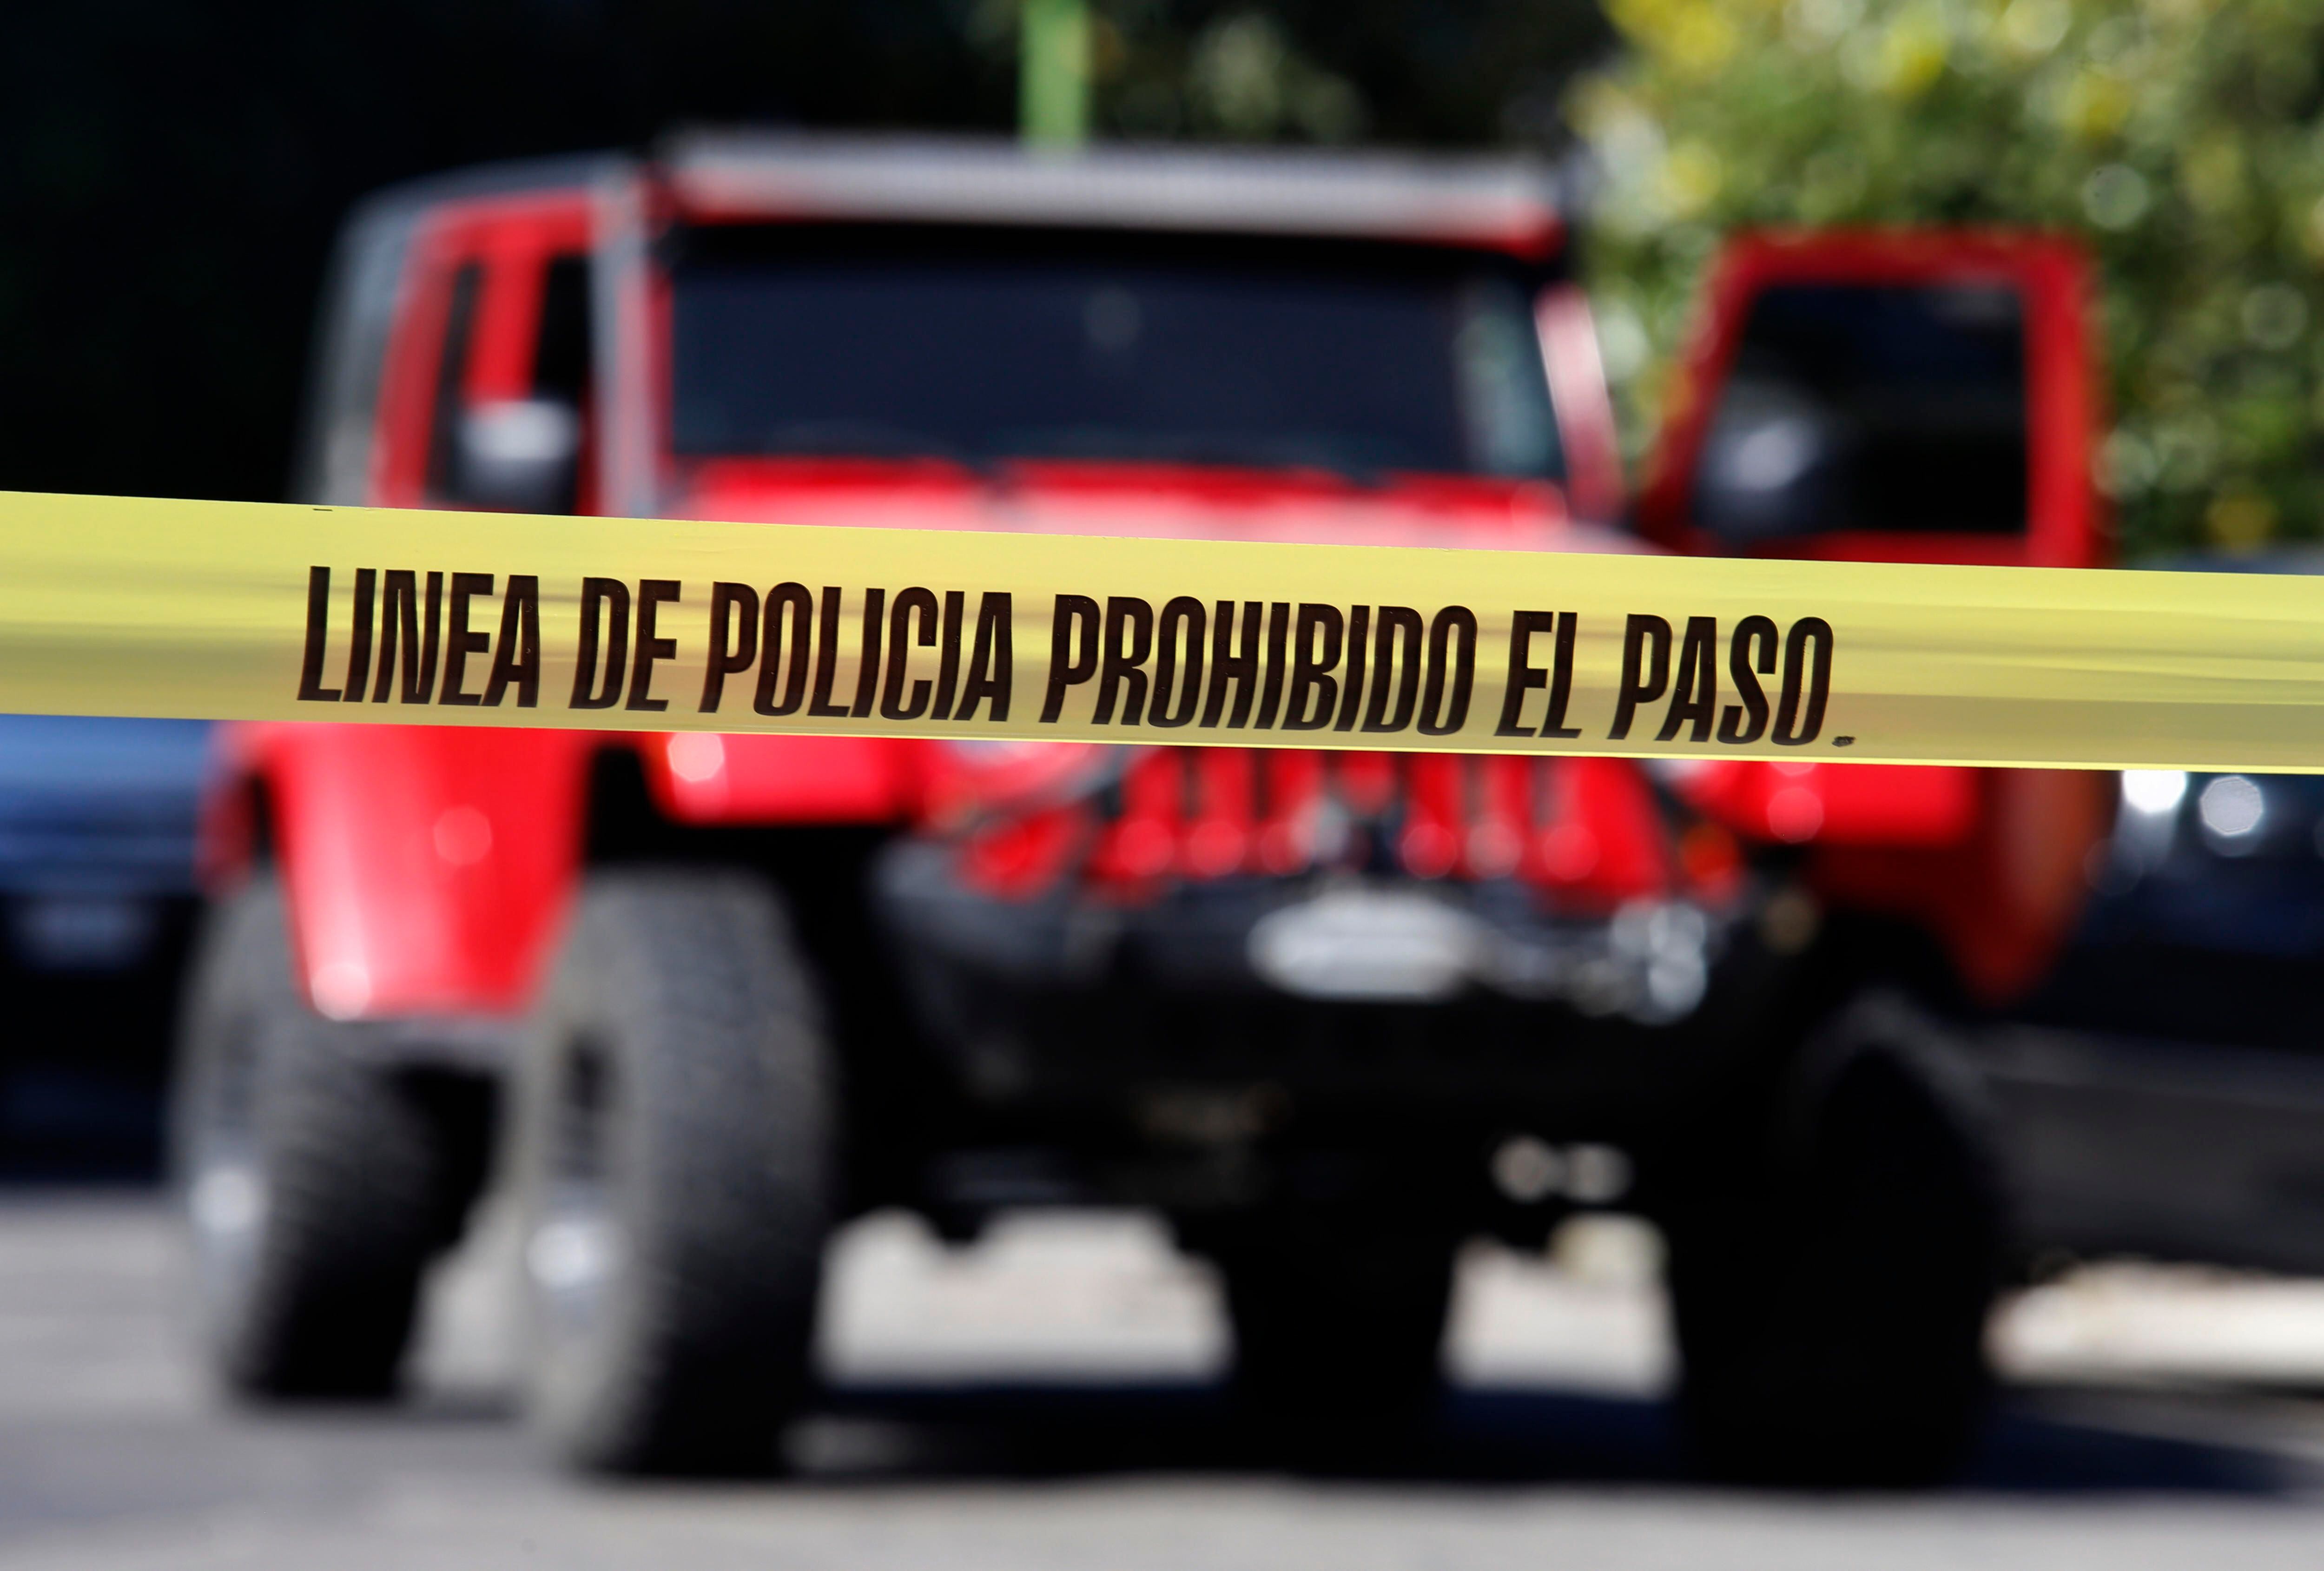 El crimen ocurre mientras México acumula más de 780 agresiones o delitos globales contra políticos, con un saldo de 89 políticos asesinados, 35 de ellos aspirantes, según la consultora Etellekt, referente en el tema. EFE/Archivo
